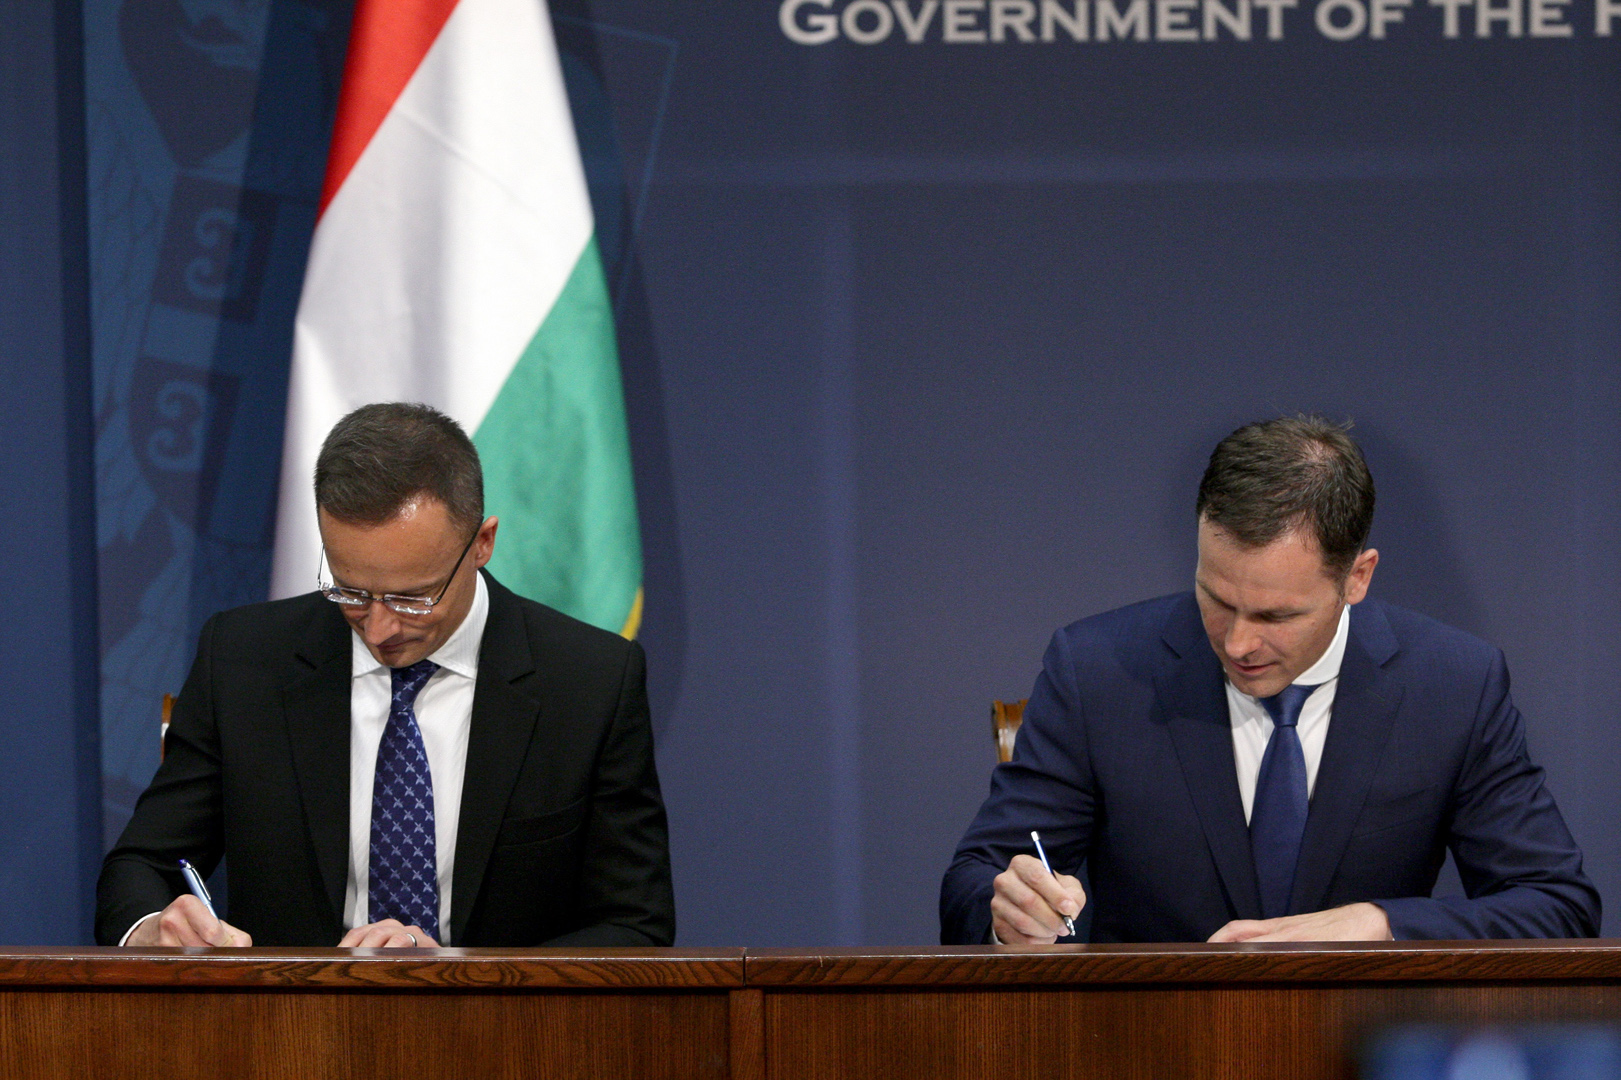 Potpisan ugovor o nabavci i skladištenju gasa u Mađarskoj, sigurna zima za građane i privredu